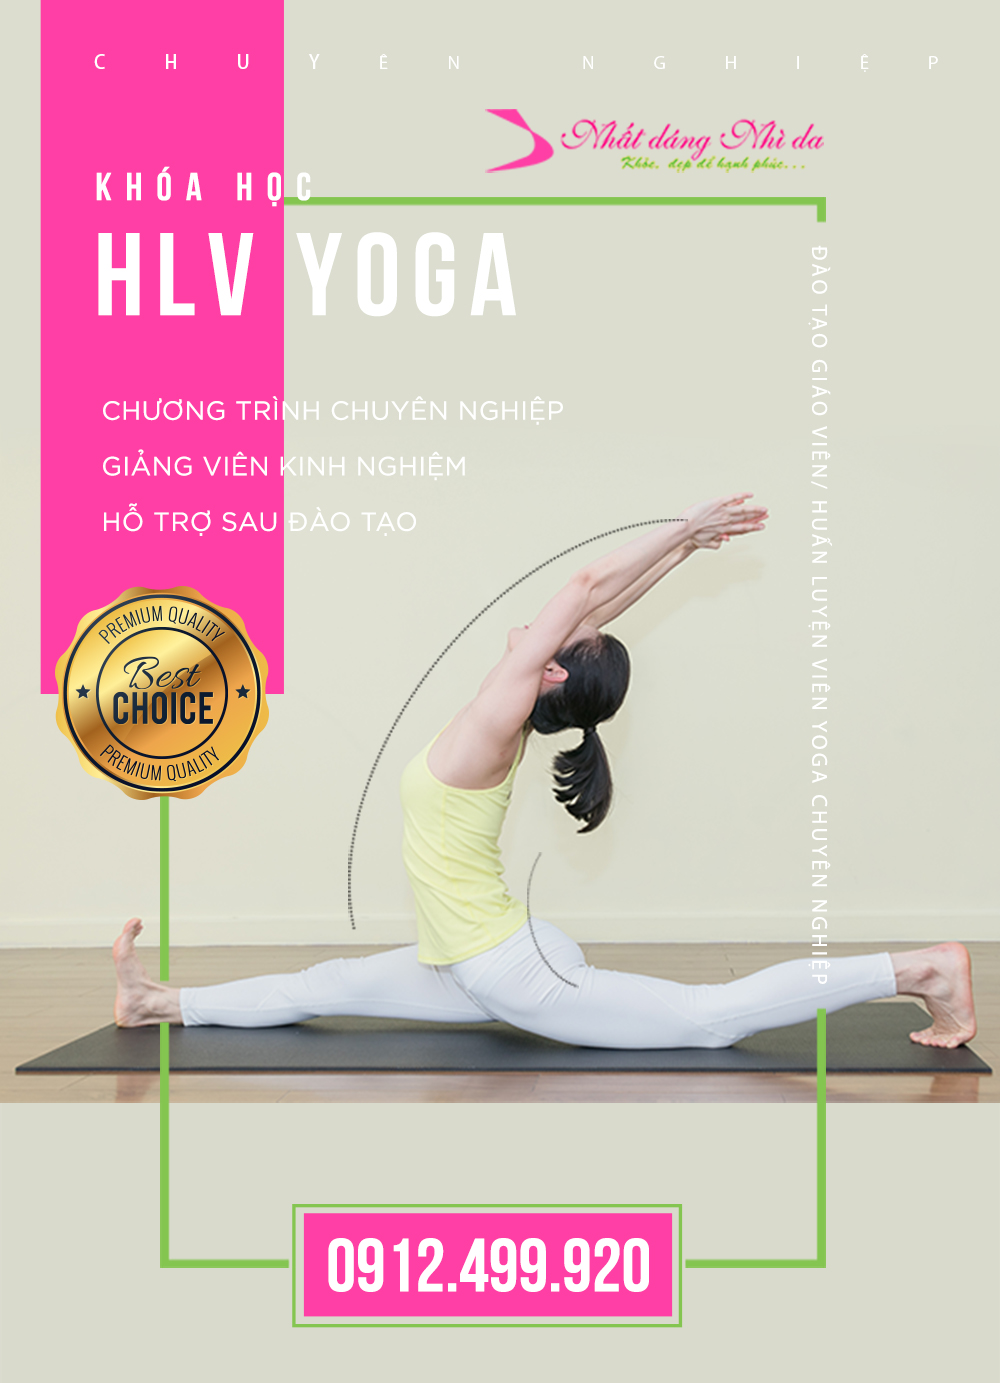 Khoa hoc HLV yoga